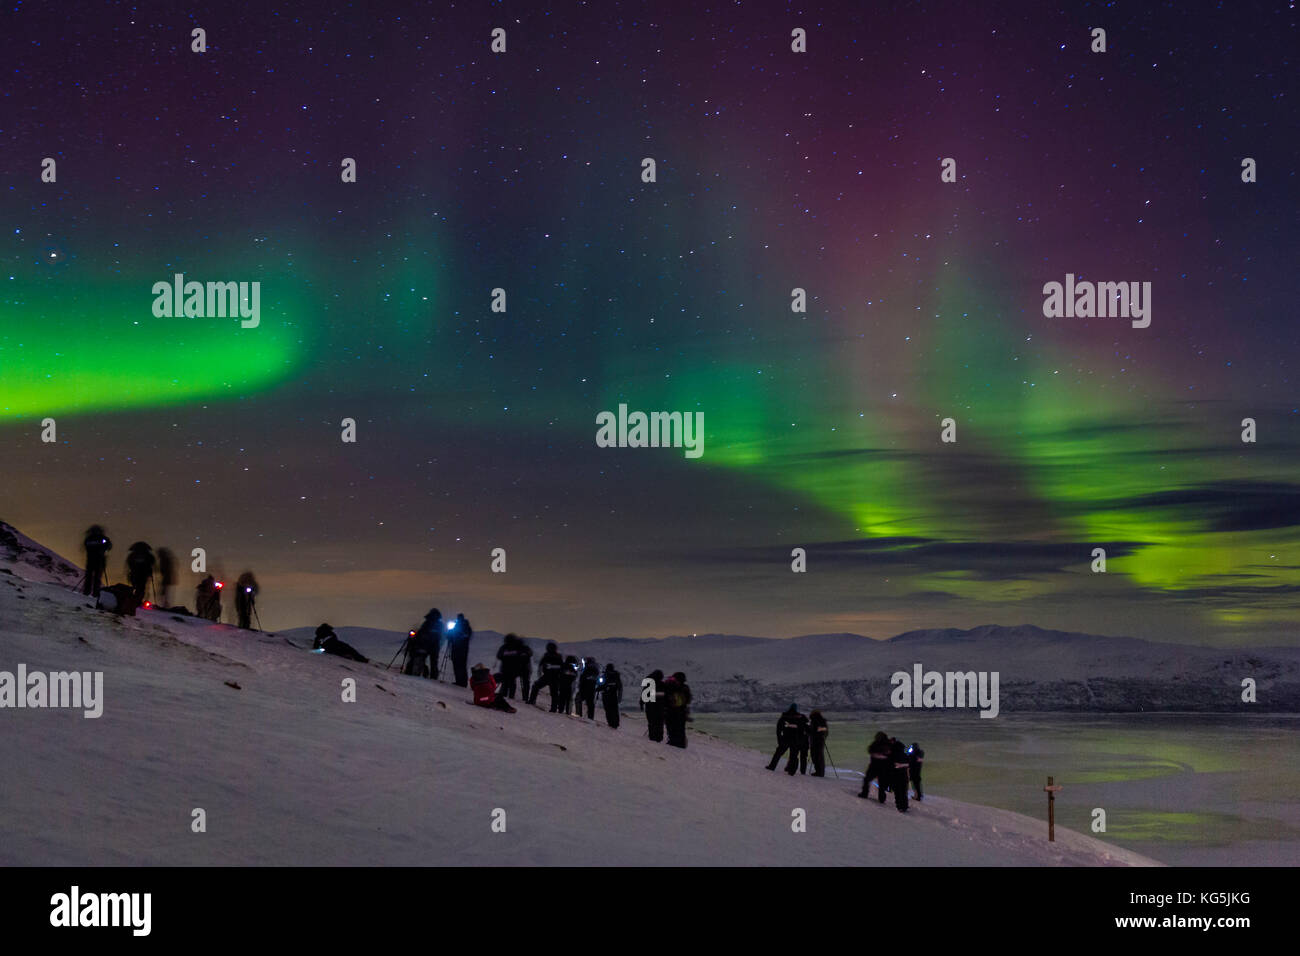 Die Menschen genießen und Fotografieren der Aurora borealis oder northern lights am Abisko sky Station, abisko, Lappland, Schweden. kalte Temperaturen von bis zu -47 Grad Celsius. Stockfoto